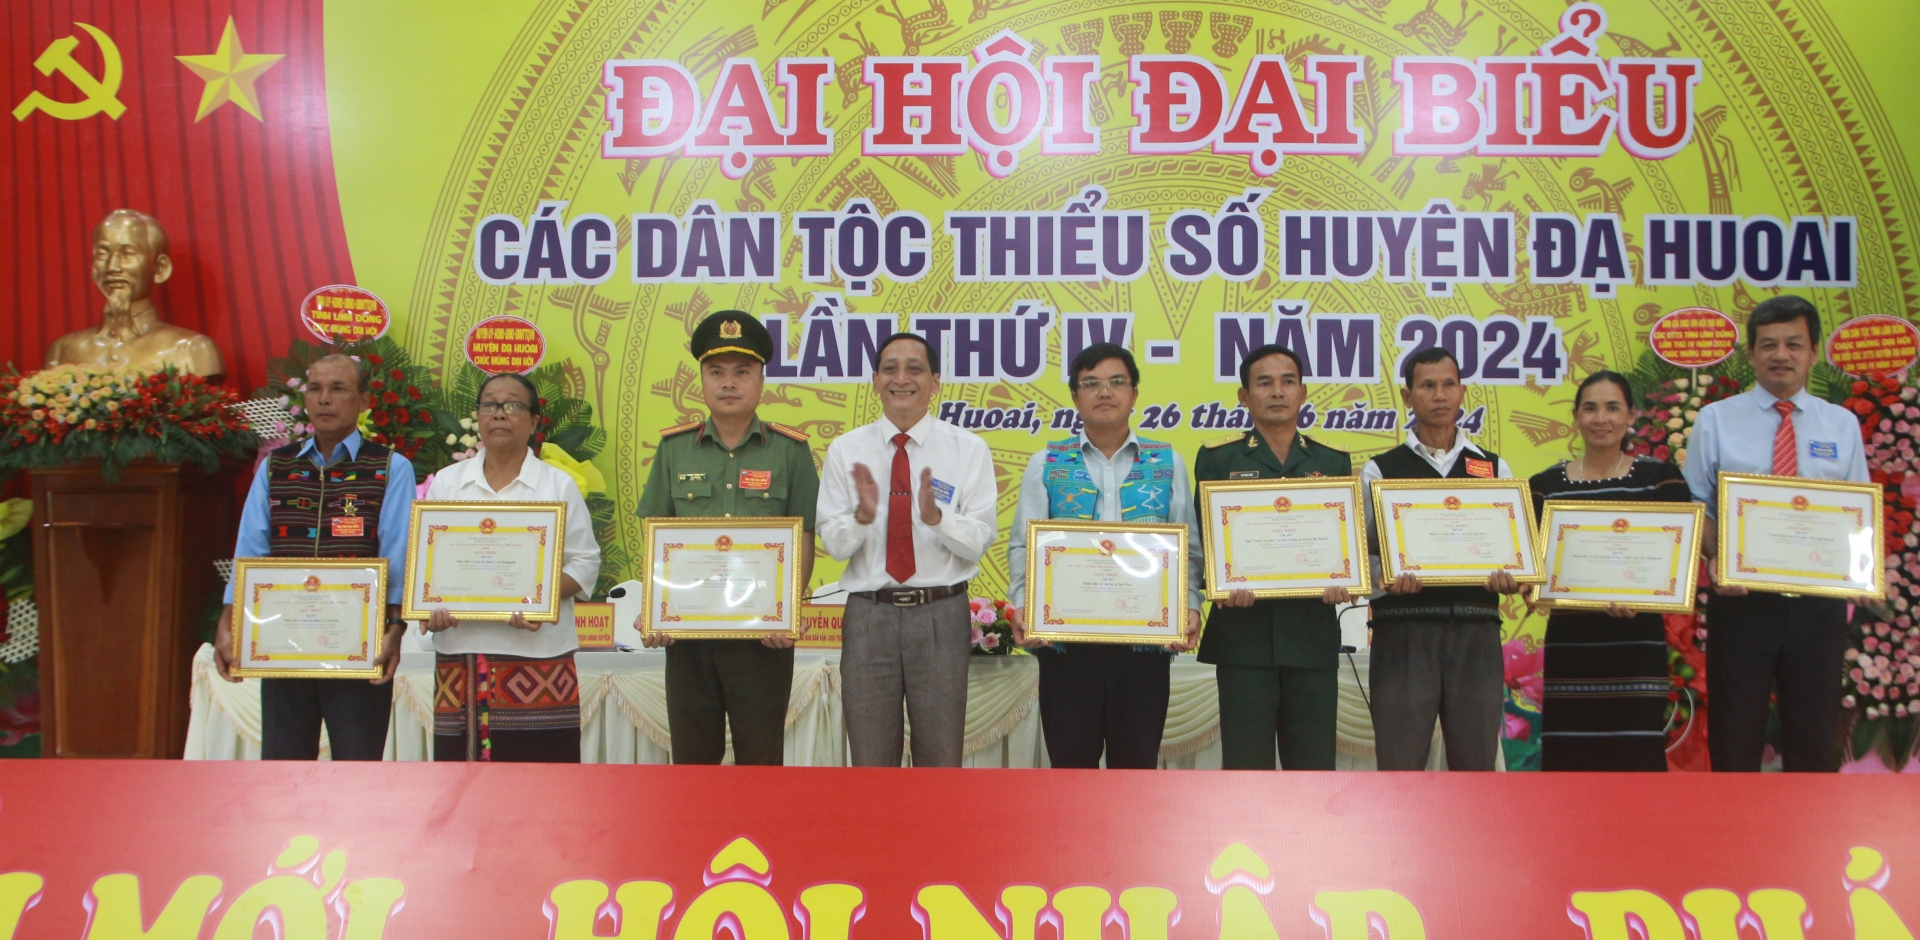 Tặng giấy khen của UBND huyện Đạ Huoai cho các tập thể